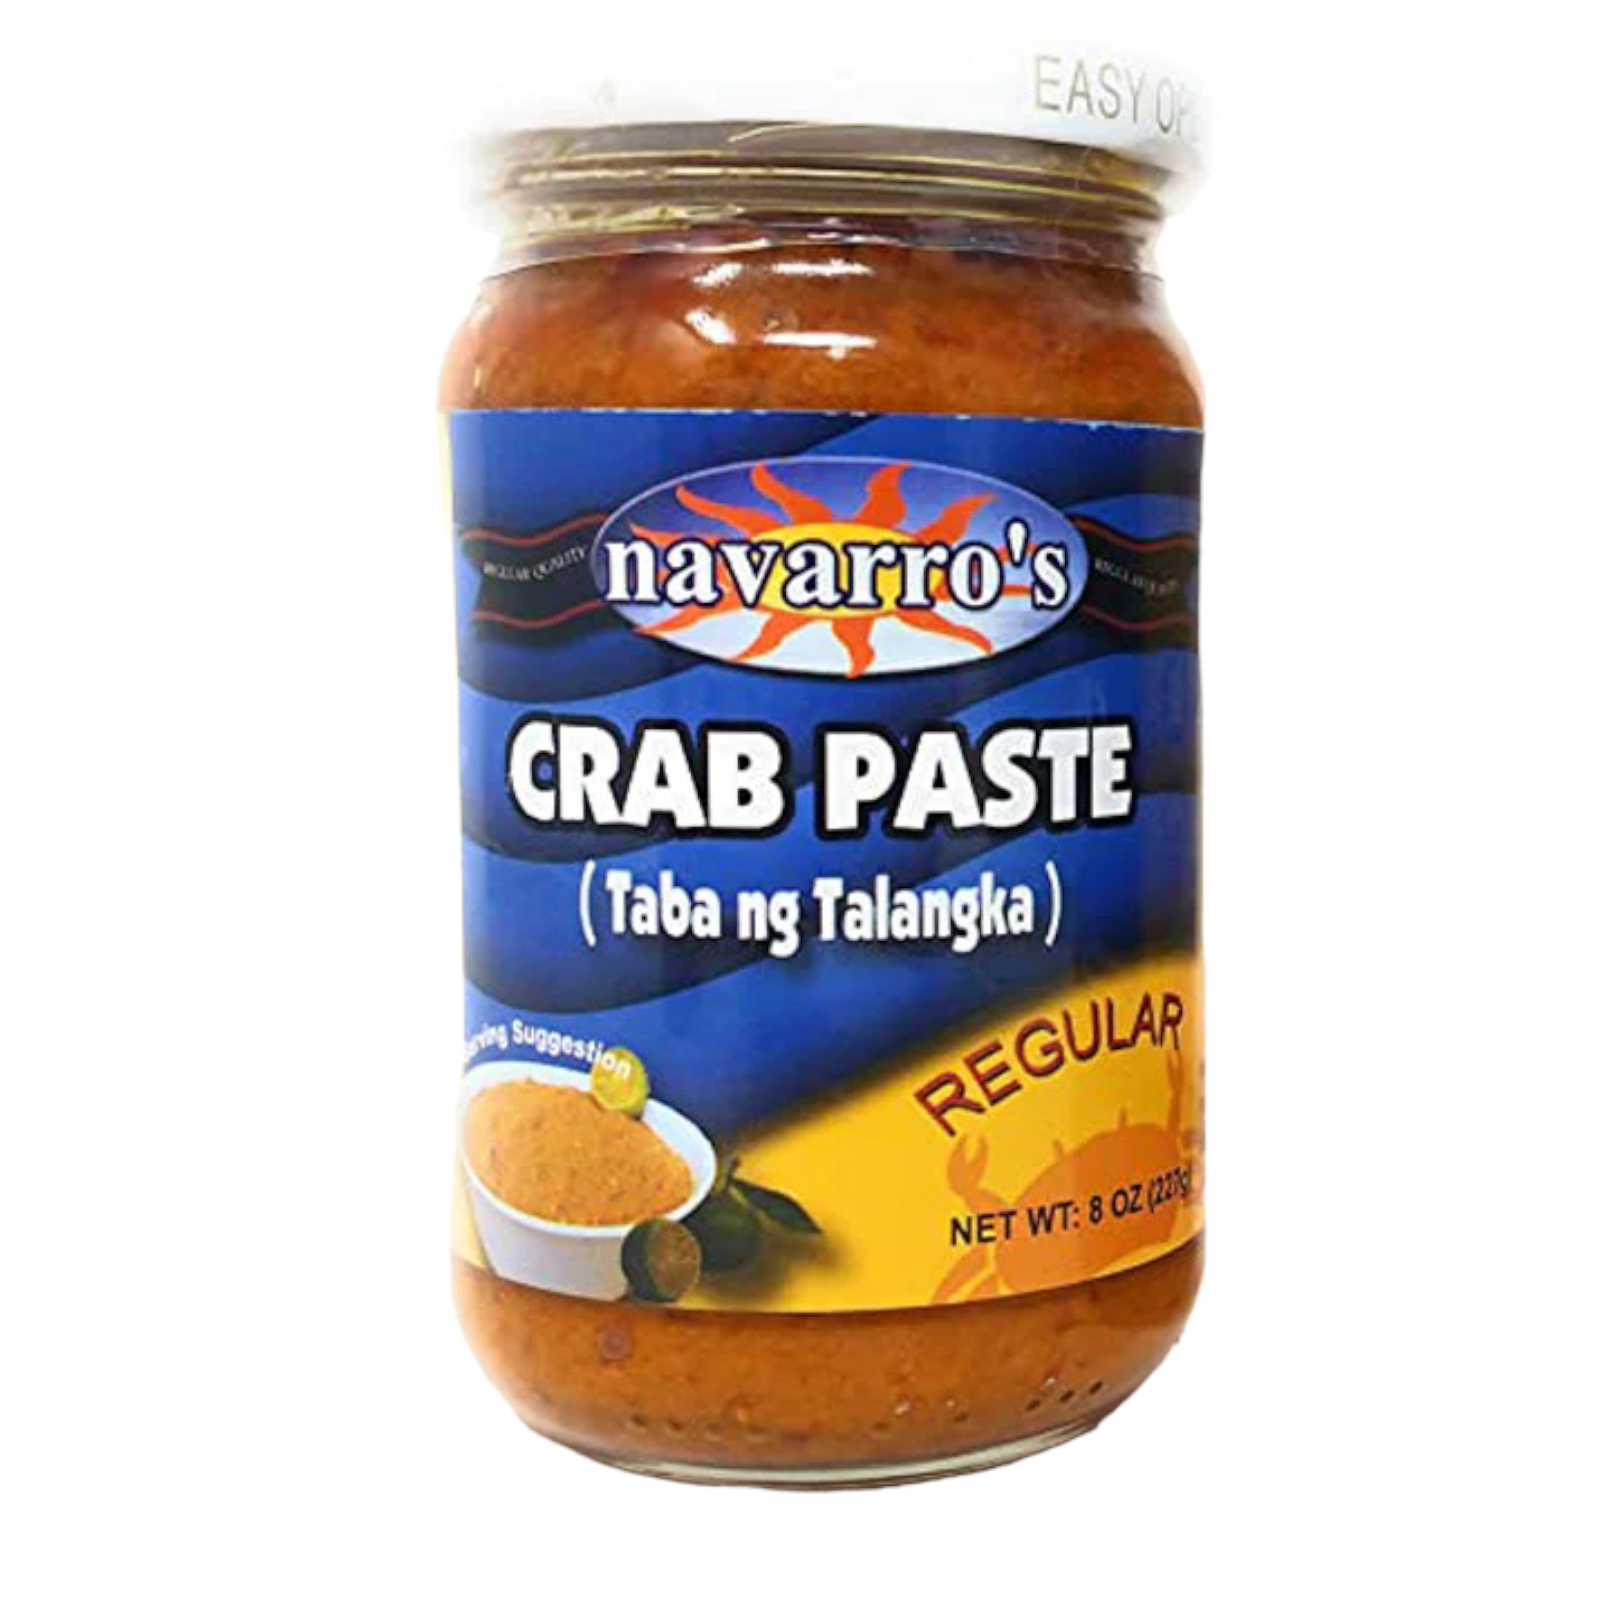 Navarro's - Crab Paste (Regular) - Taba Ng Talangka - 8 OZ